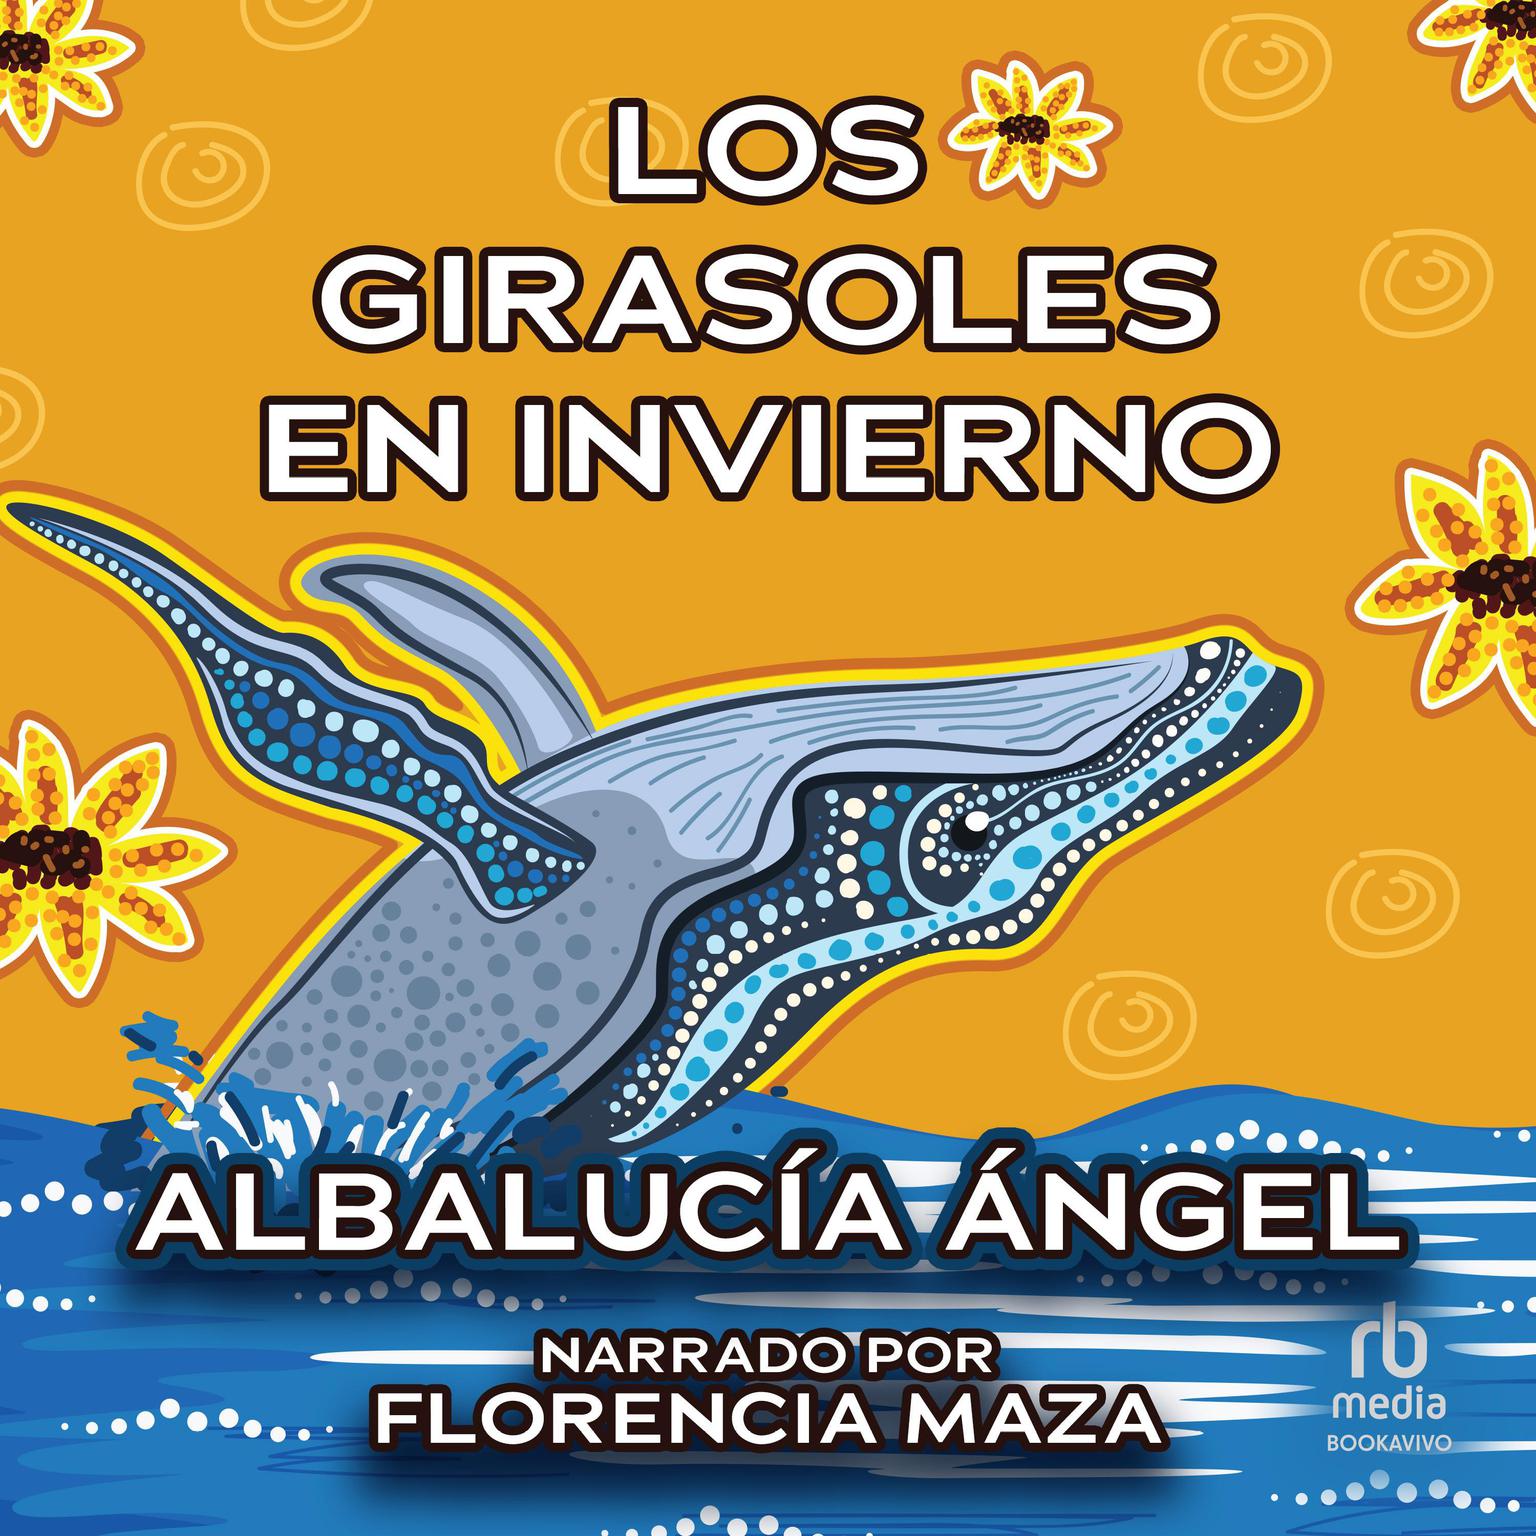 Los girasoles en invierno Audiobook, by Albalucia Angel